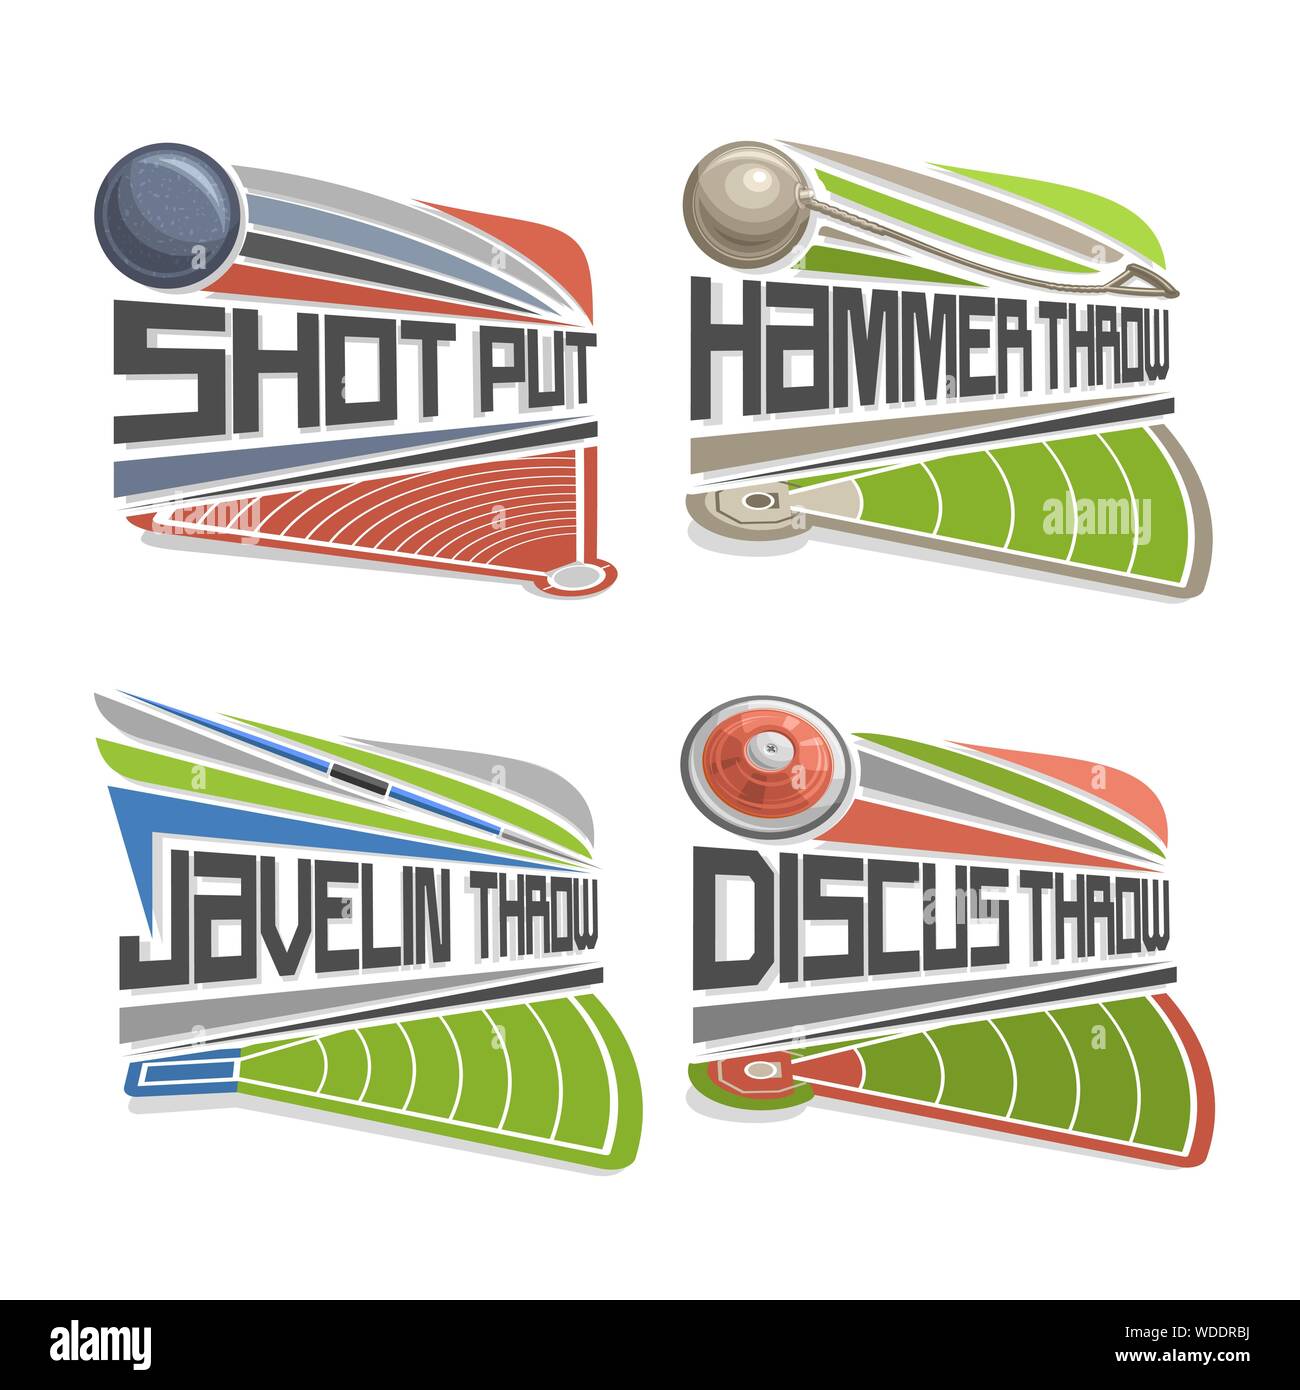 Vektor logo für Athletik Felder, bestehend aus abstrakten Diskuswerfen, Kugelstoßen, Hammer und Speer. Leichtathletik Stadion, Rüsten Stock Vektor